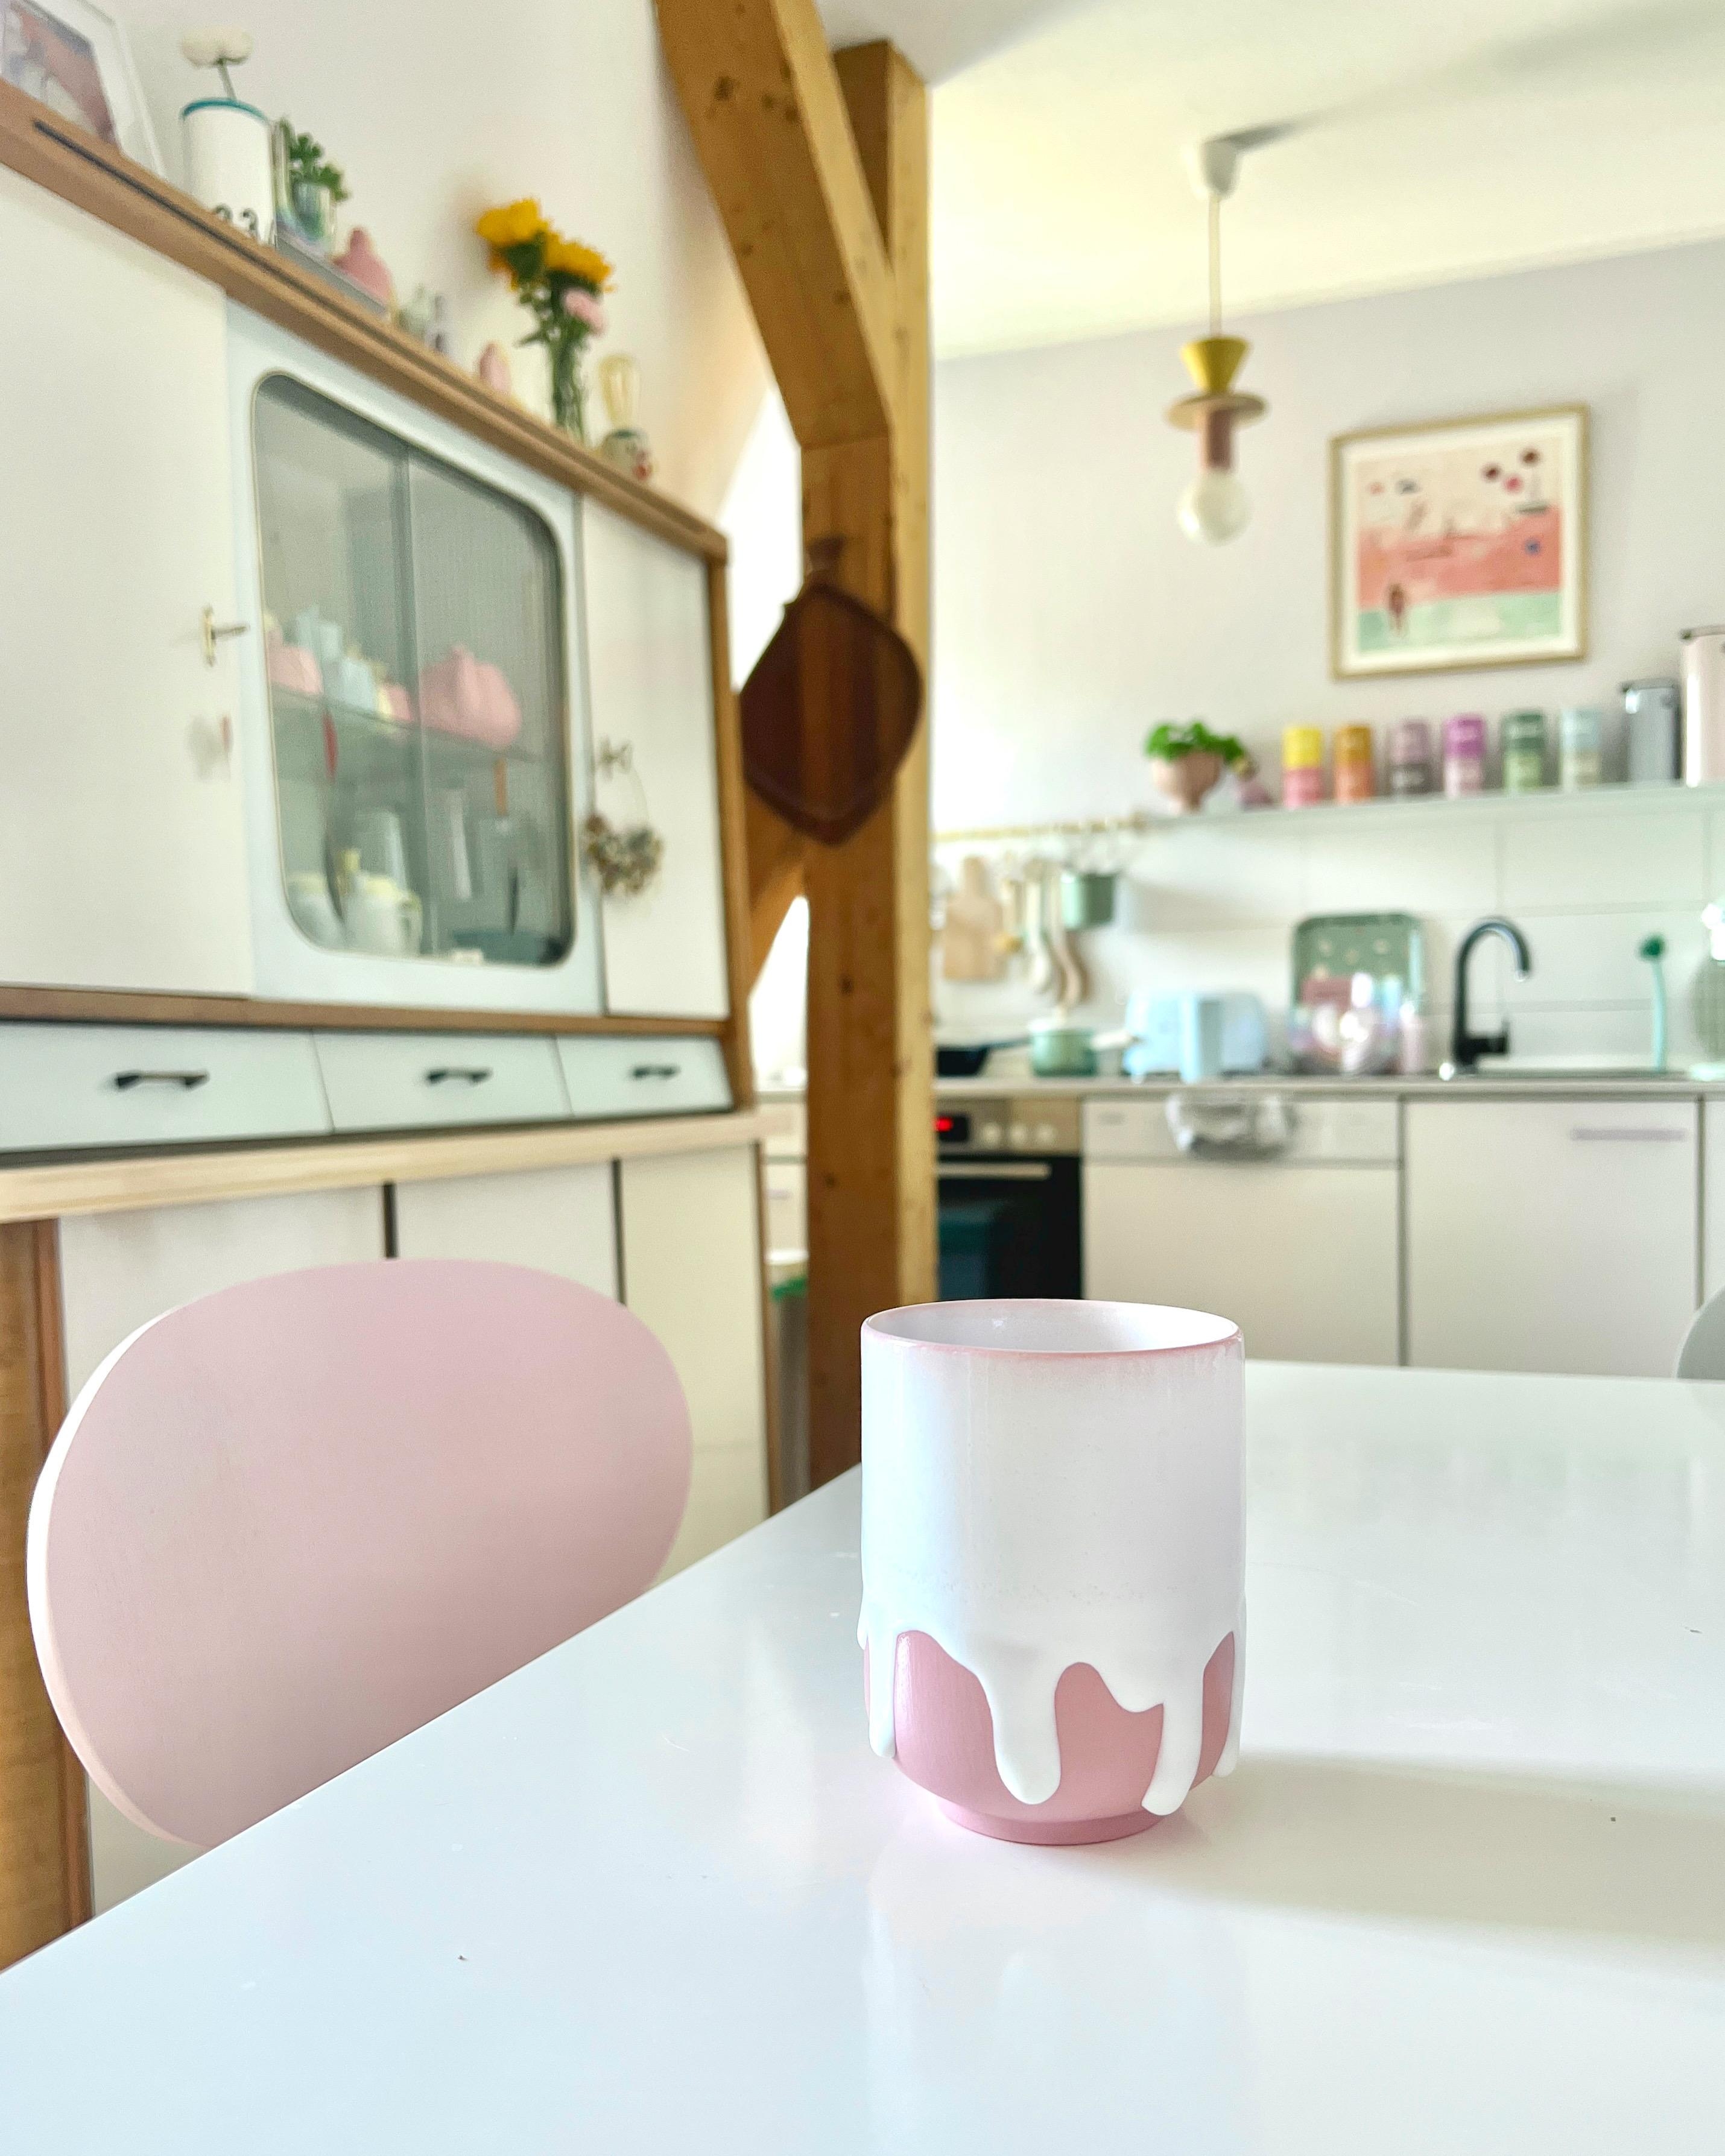 #interior #interiordesign #couchliebt #küche #pastell #küchenzeile #studioarhoj #rosa #buffet #midcentury #keramik 